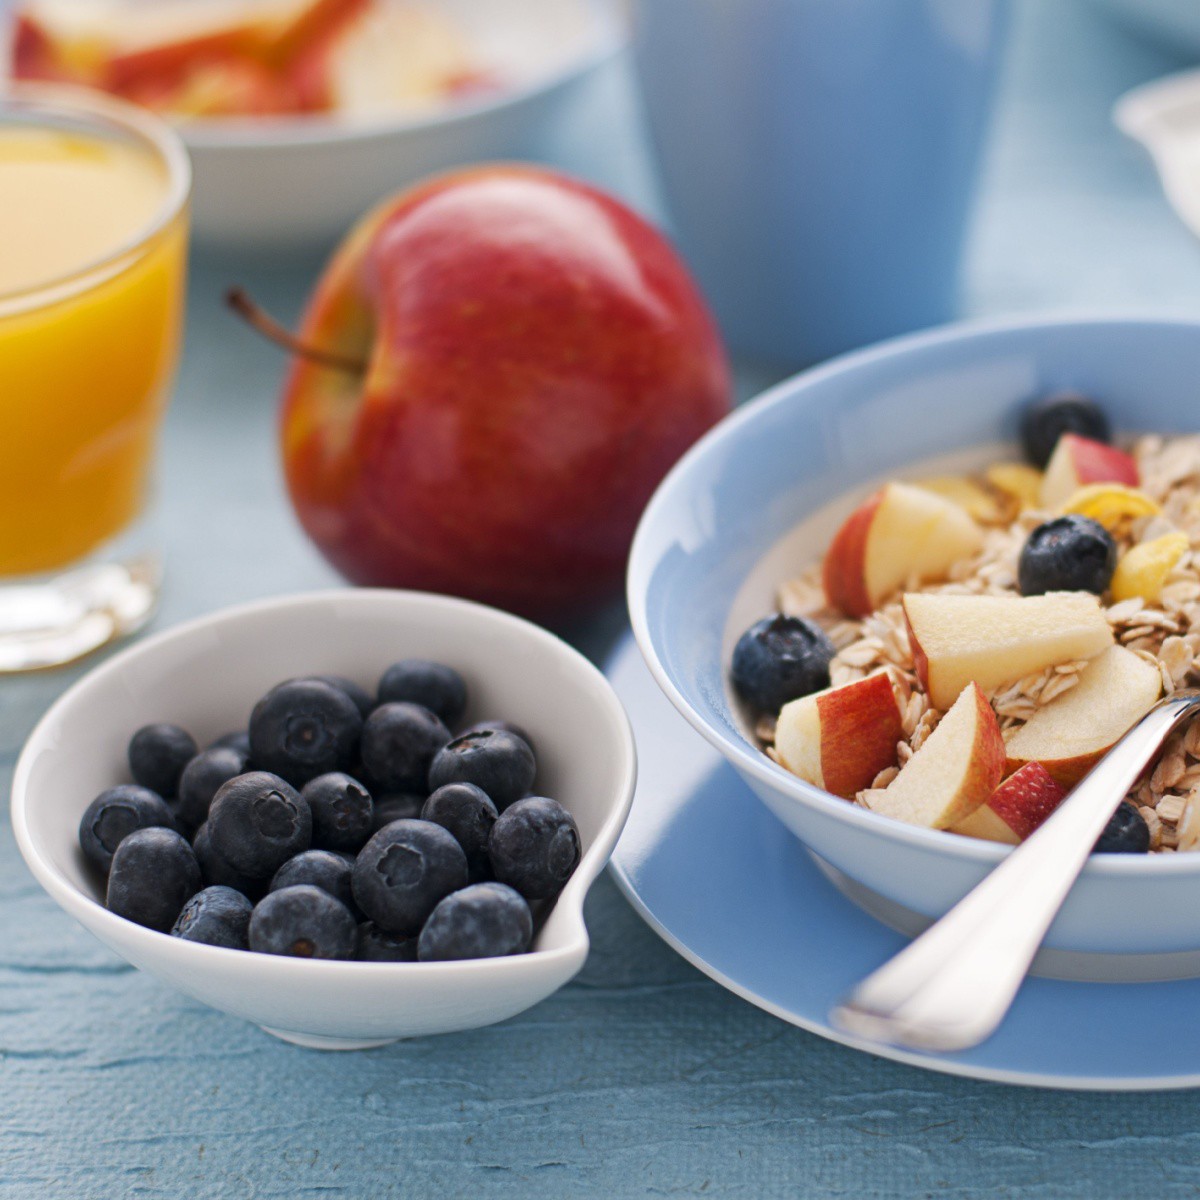 4 thực phẩm chuẩn bị cho bữa sáng giúp "đánh tan" chất béo - 2